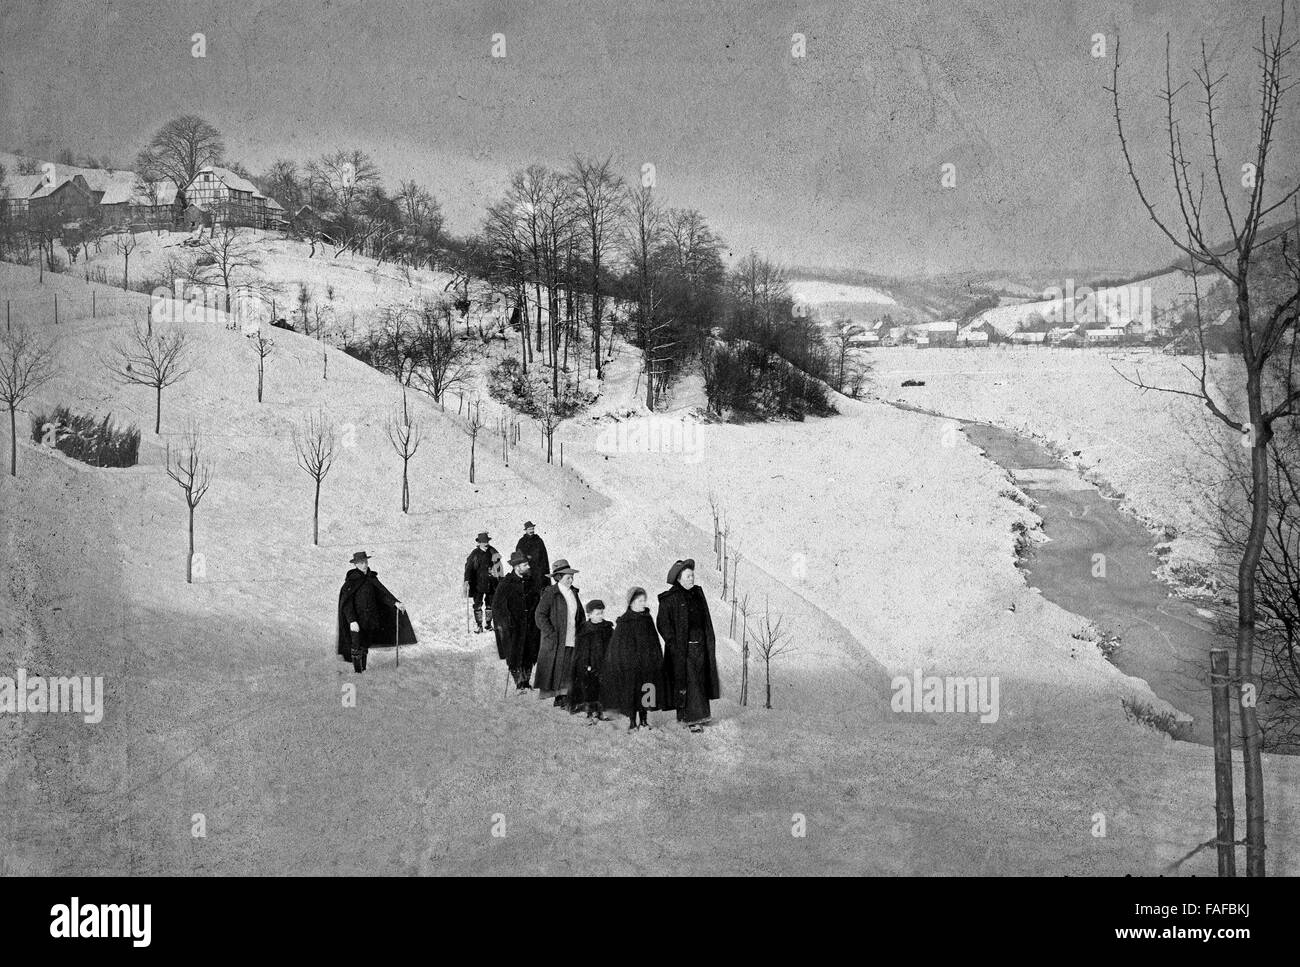 Menschen spazieren im Sülztal zugeschneiten bei Lindlar, Deutschland 1920er Jahre. Persone che passeggiano a nevicato in Suelztal Valley vicino a Lindlar, Germania 1920s. Foto Stock